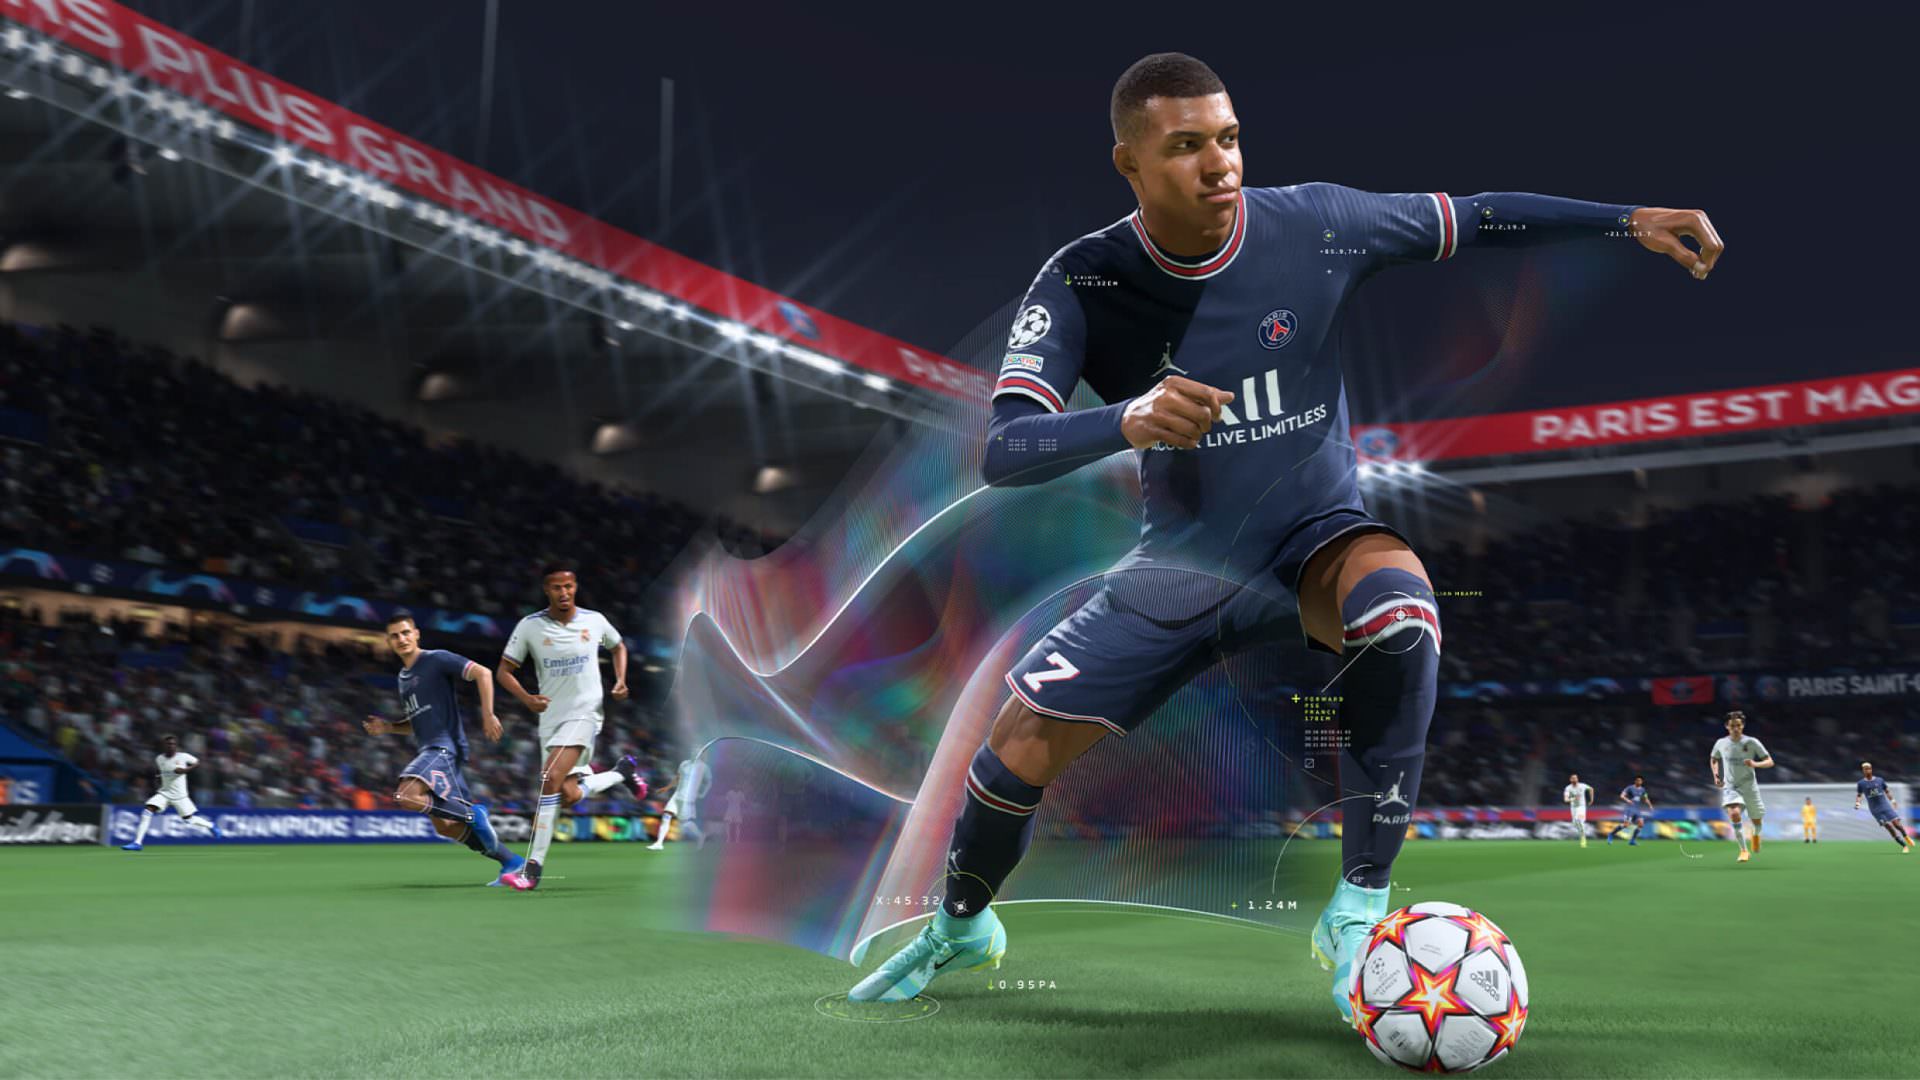 افت فروش فیزیکی FIFA 22 در انگلستان نسبت به سال گذشته